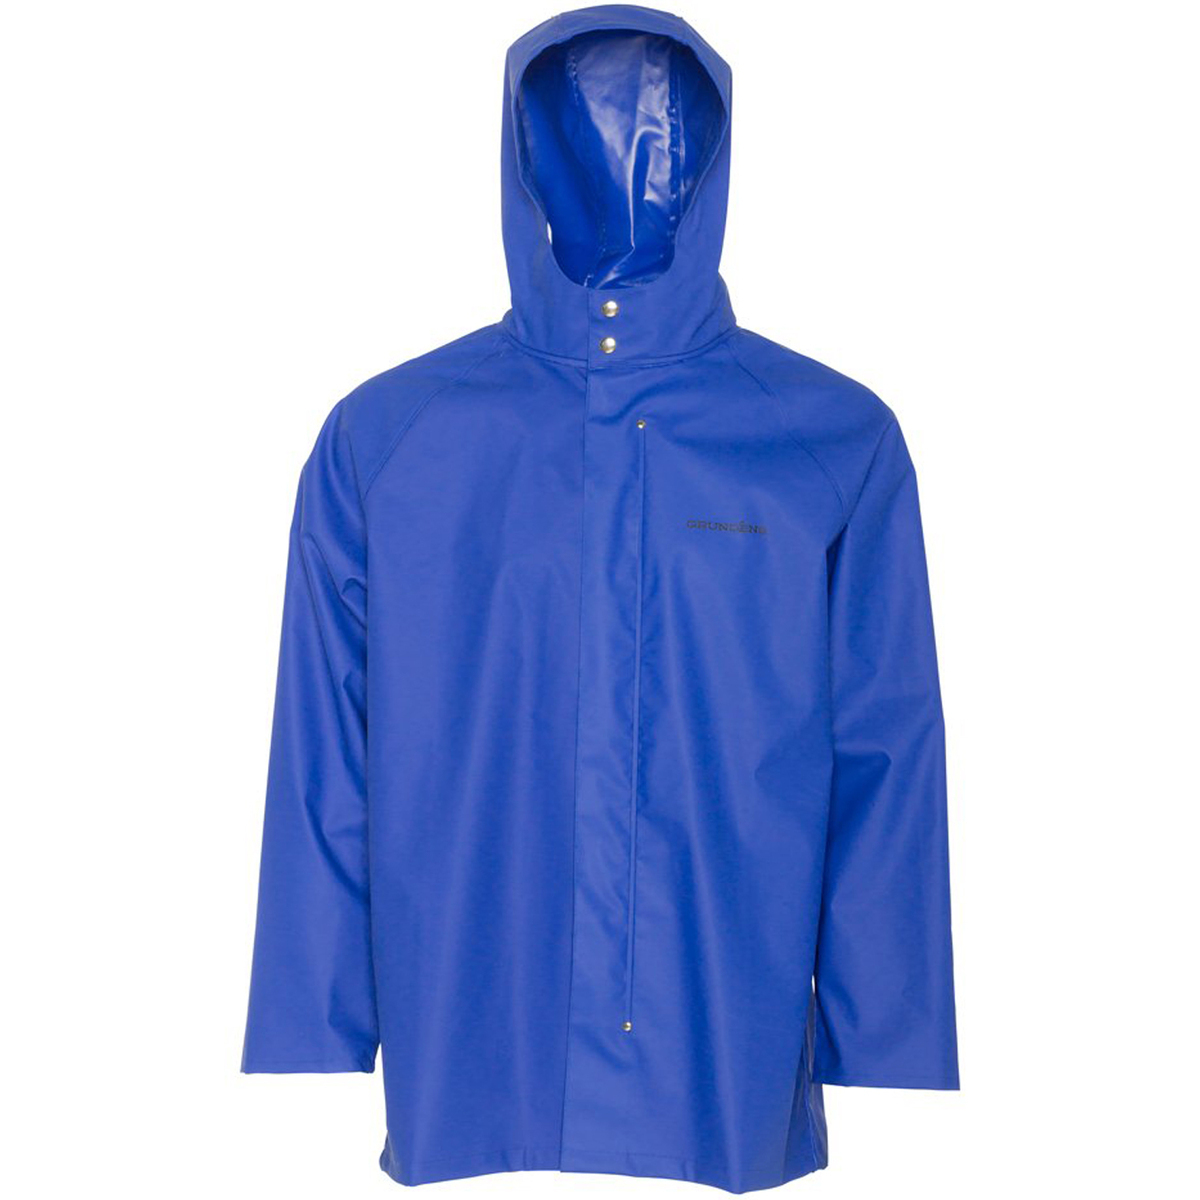 Grundens Men’s Shoreman Jacket | Waterproof, Stain-Resistant Seafood Processing Jacket, Ocean Blue, Medium